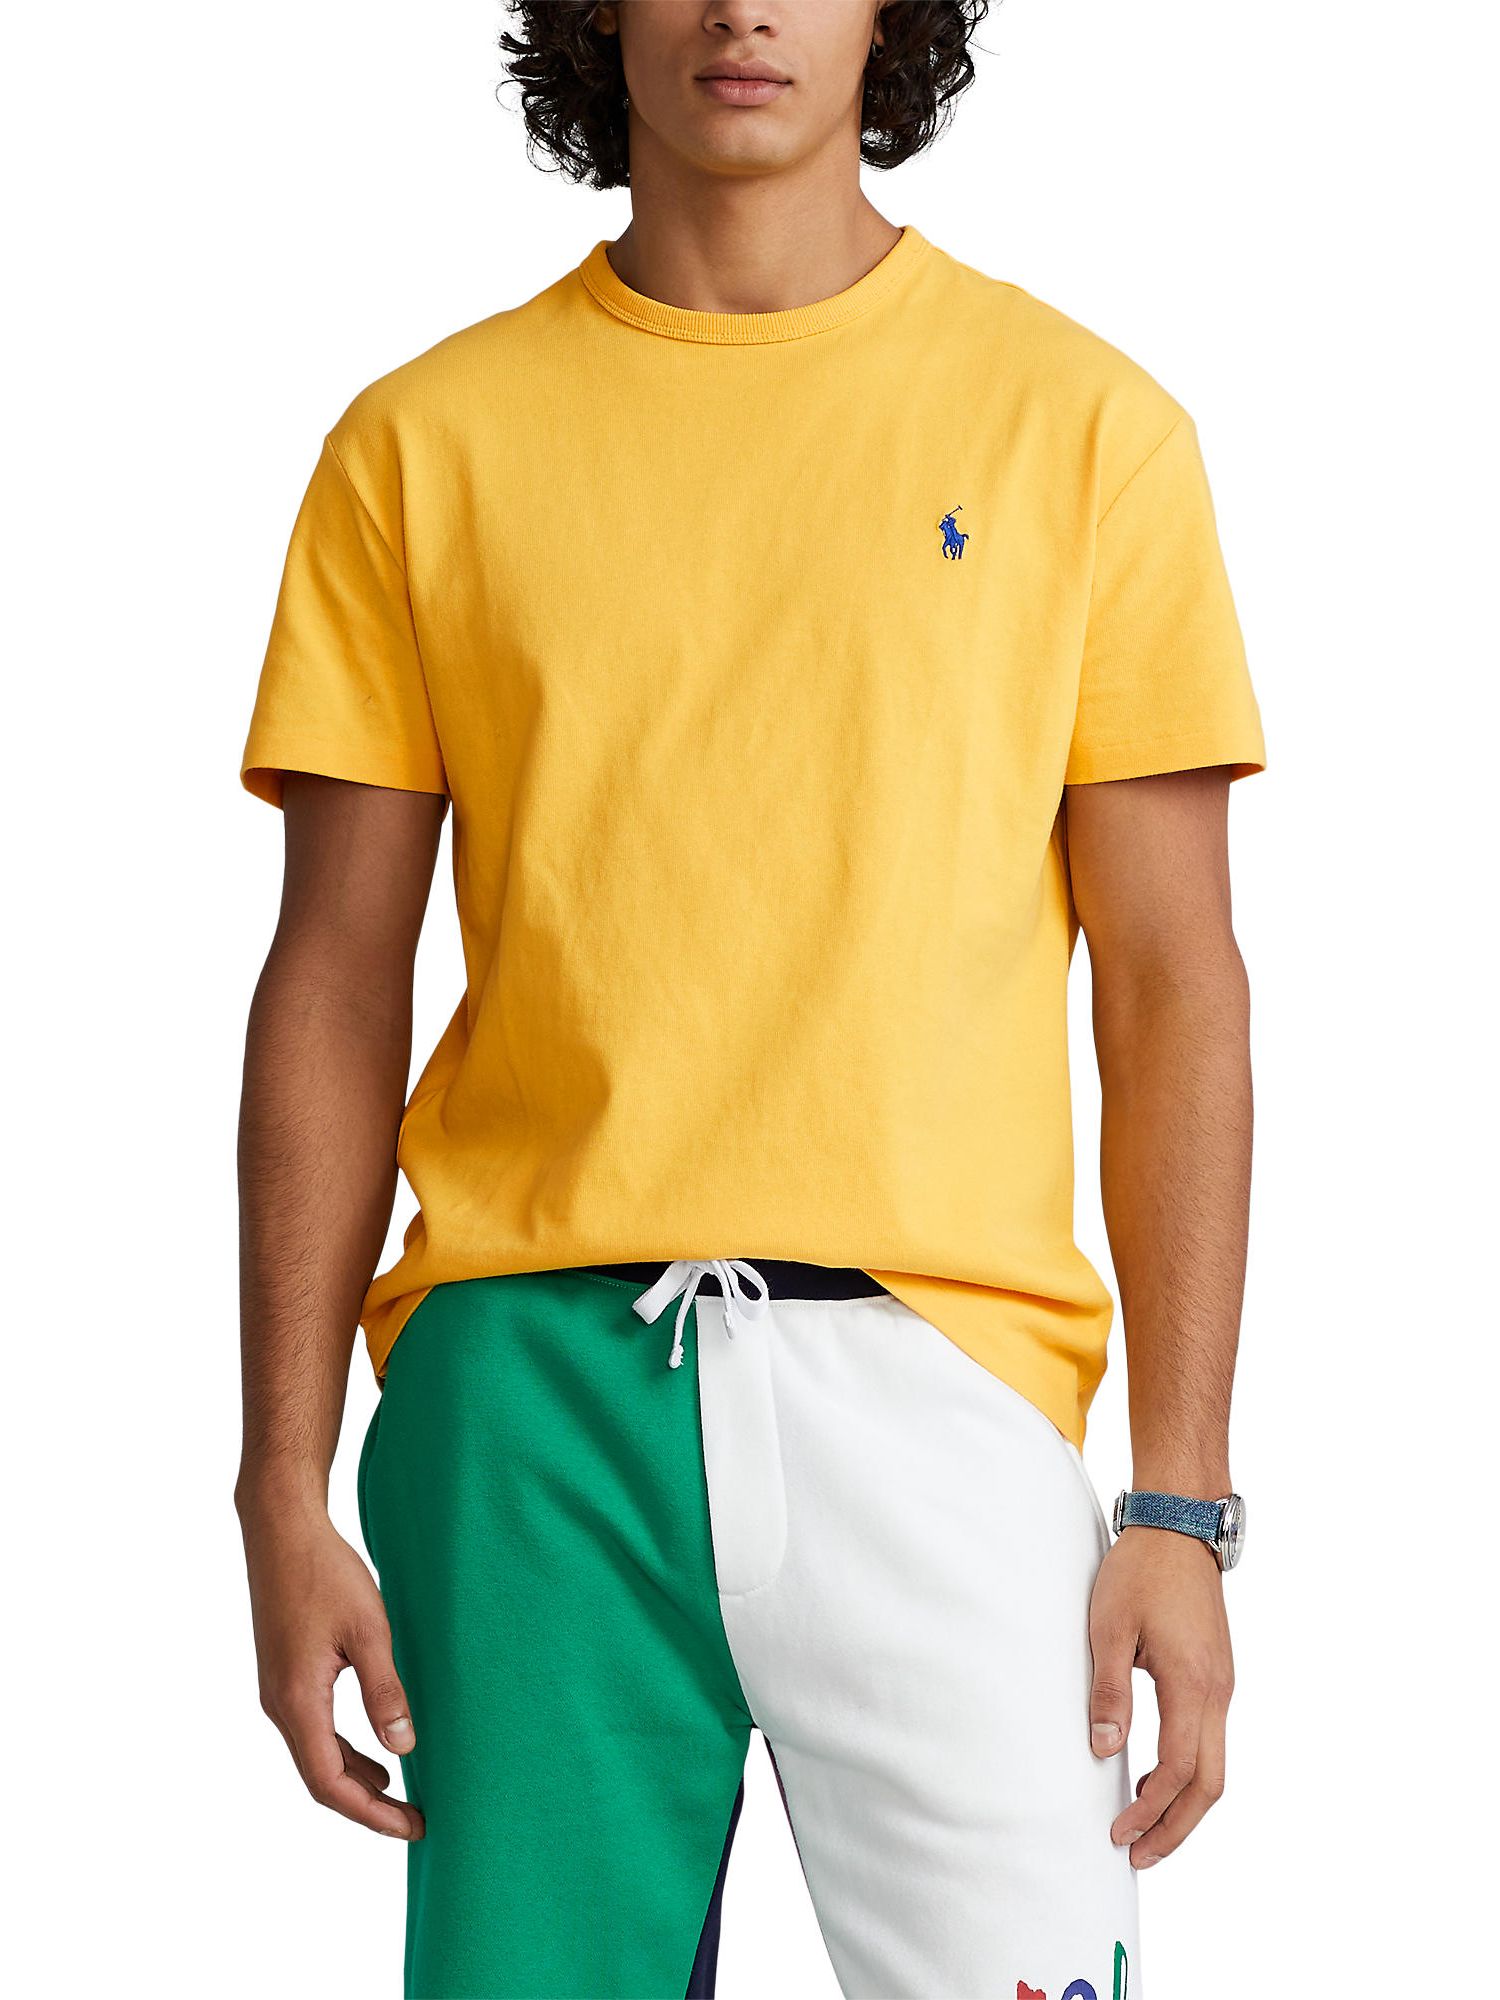 Polo Ralph Lauren Heavyweight Classic Fit T-Shirt, Yellow/Fin